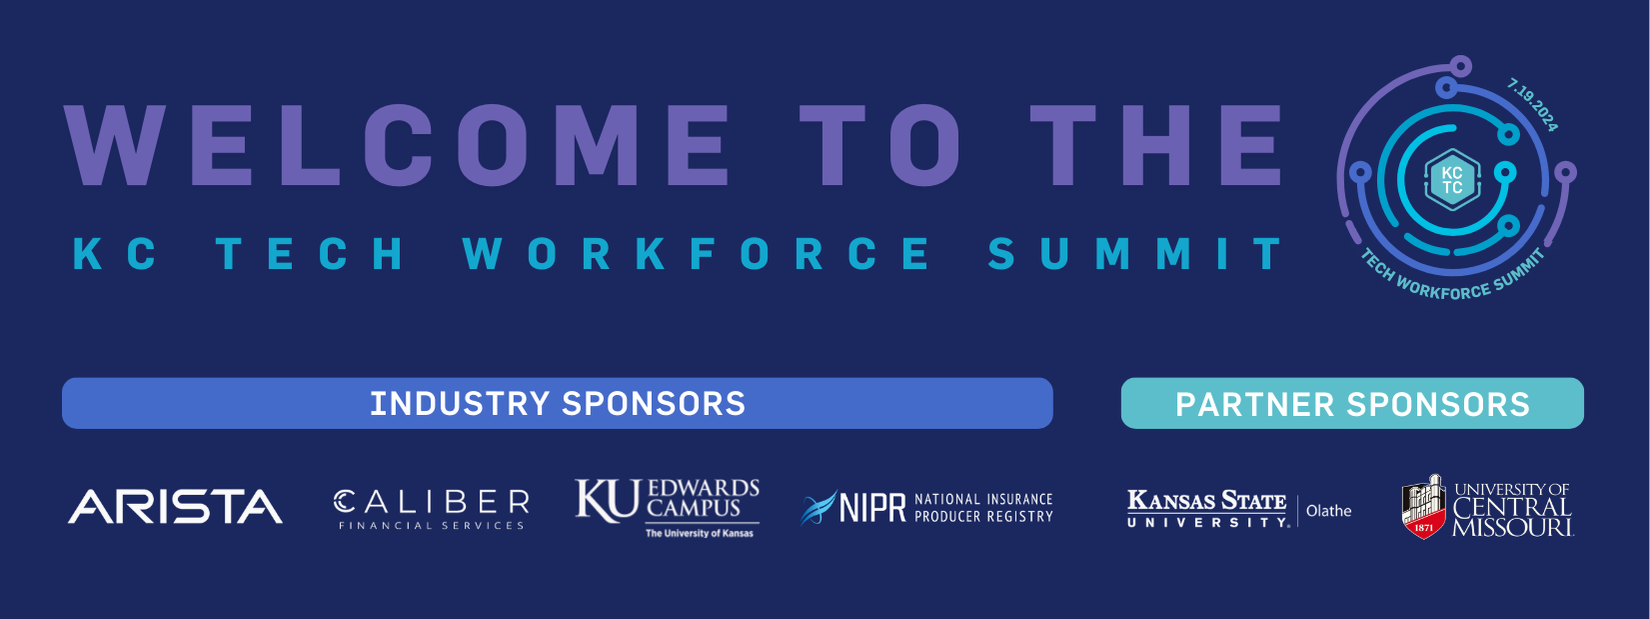 KC Tech Workforce Summit Header